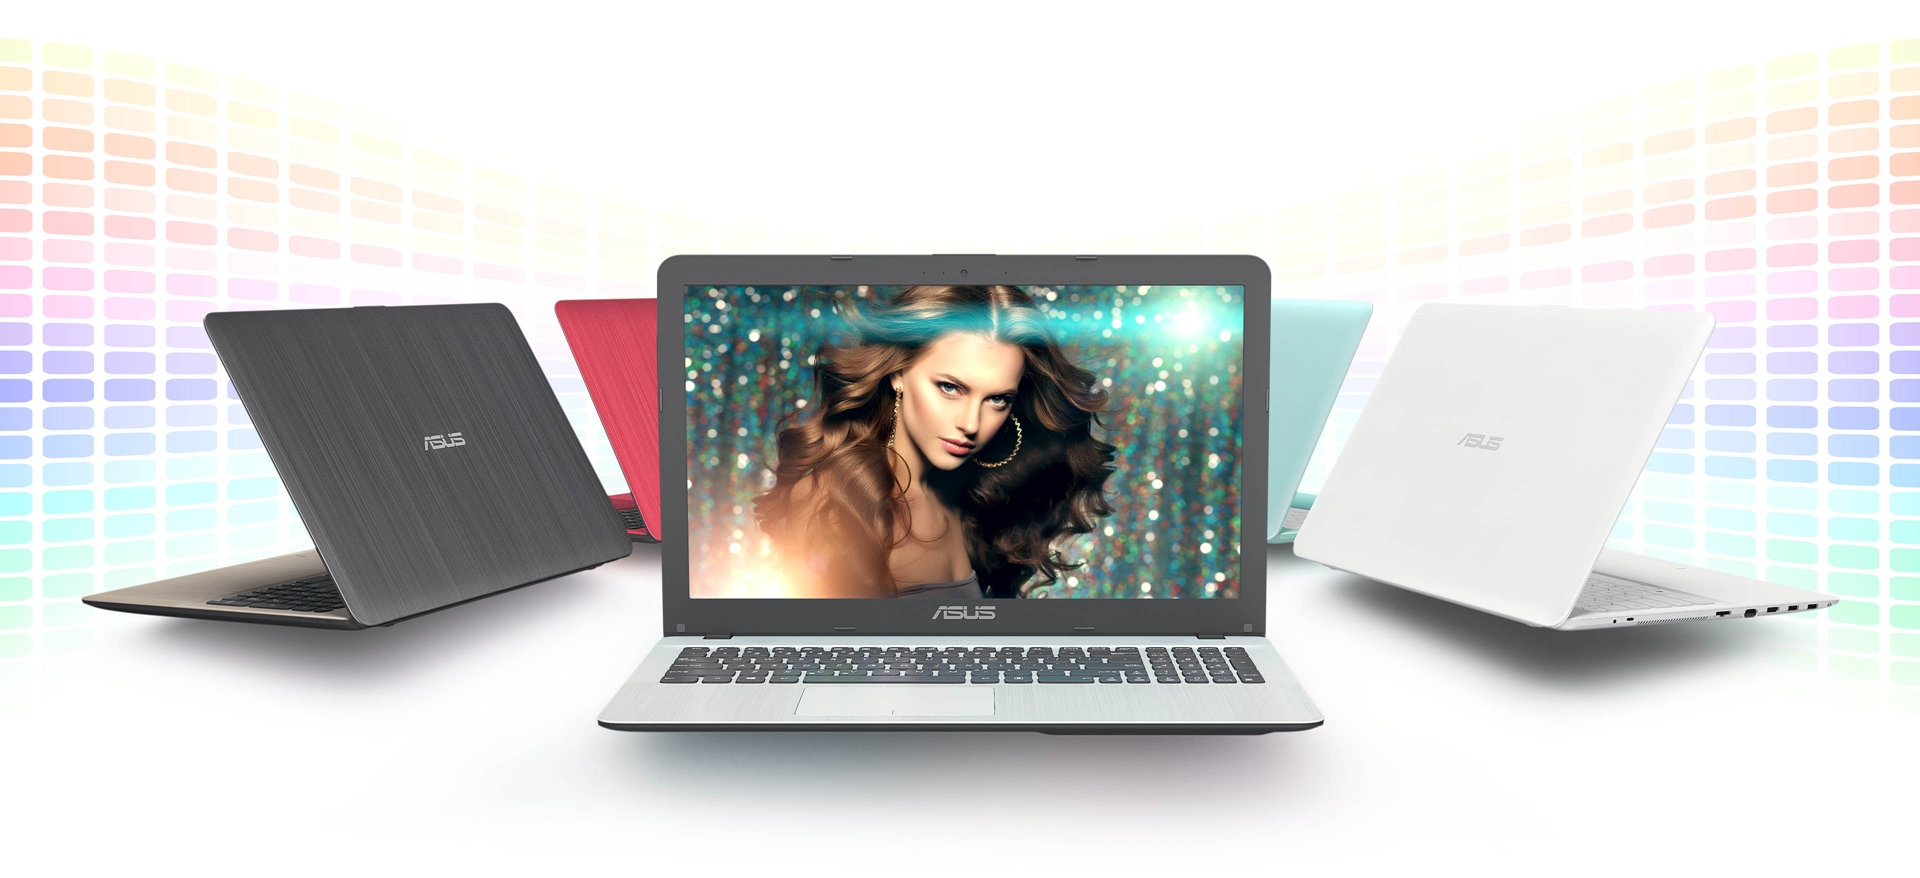 ASUS представила ноутбук VivoBook Max X441